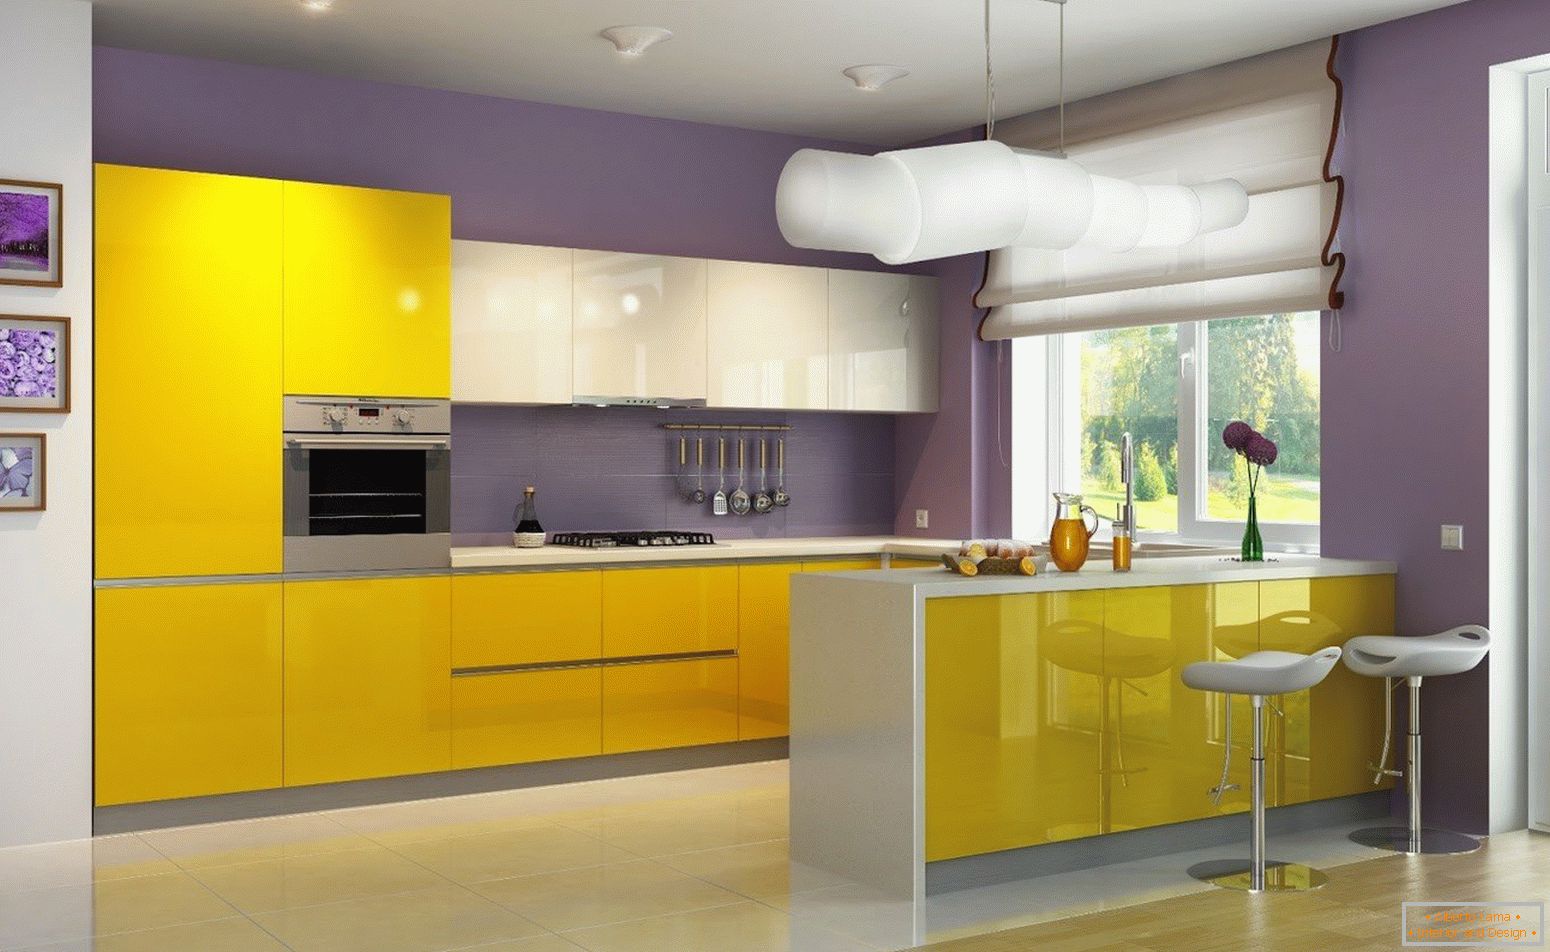 Cozinha amarelo-violeta